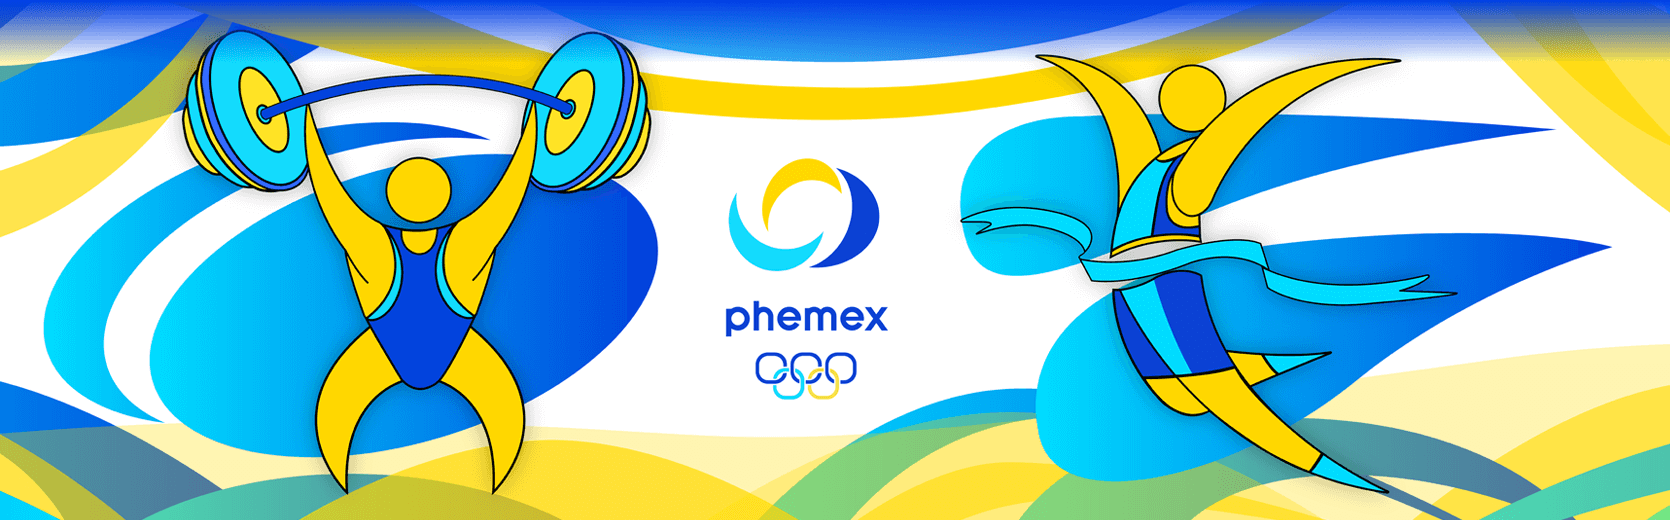 The Phemex Olympics is here